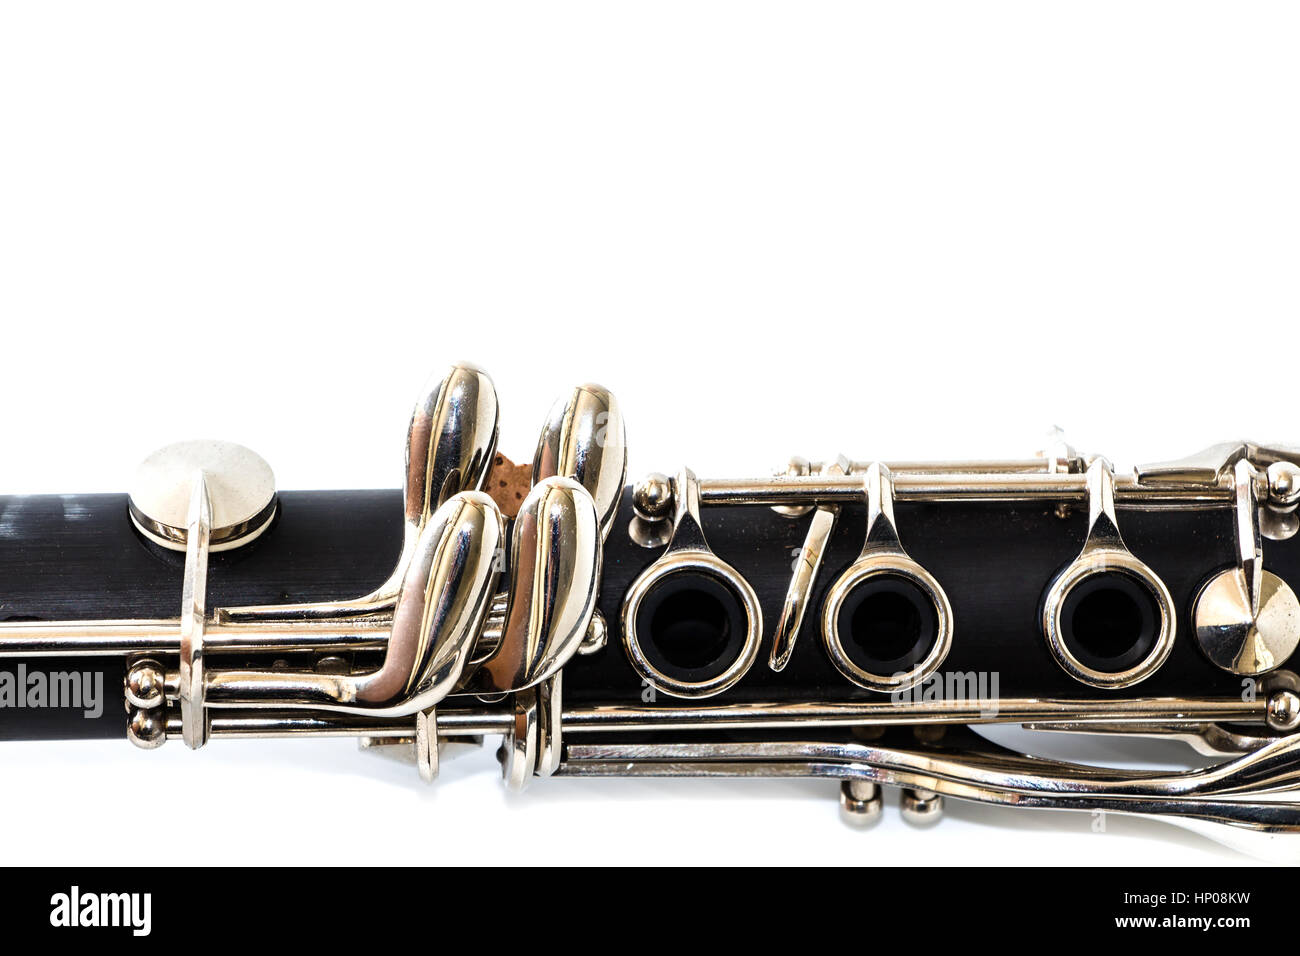 Clarinet on white background Stock Photo